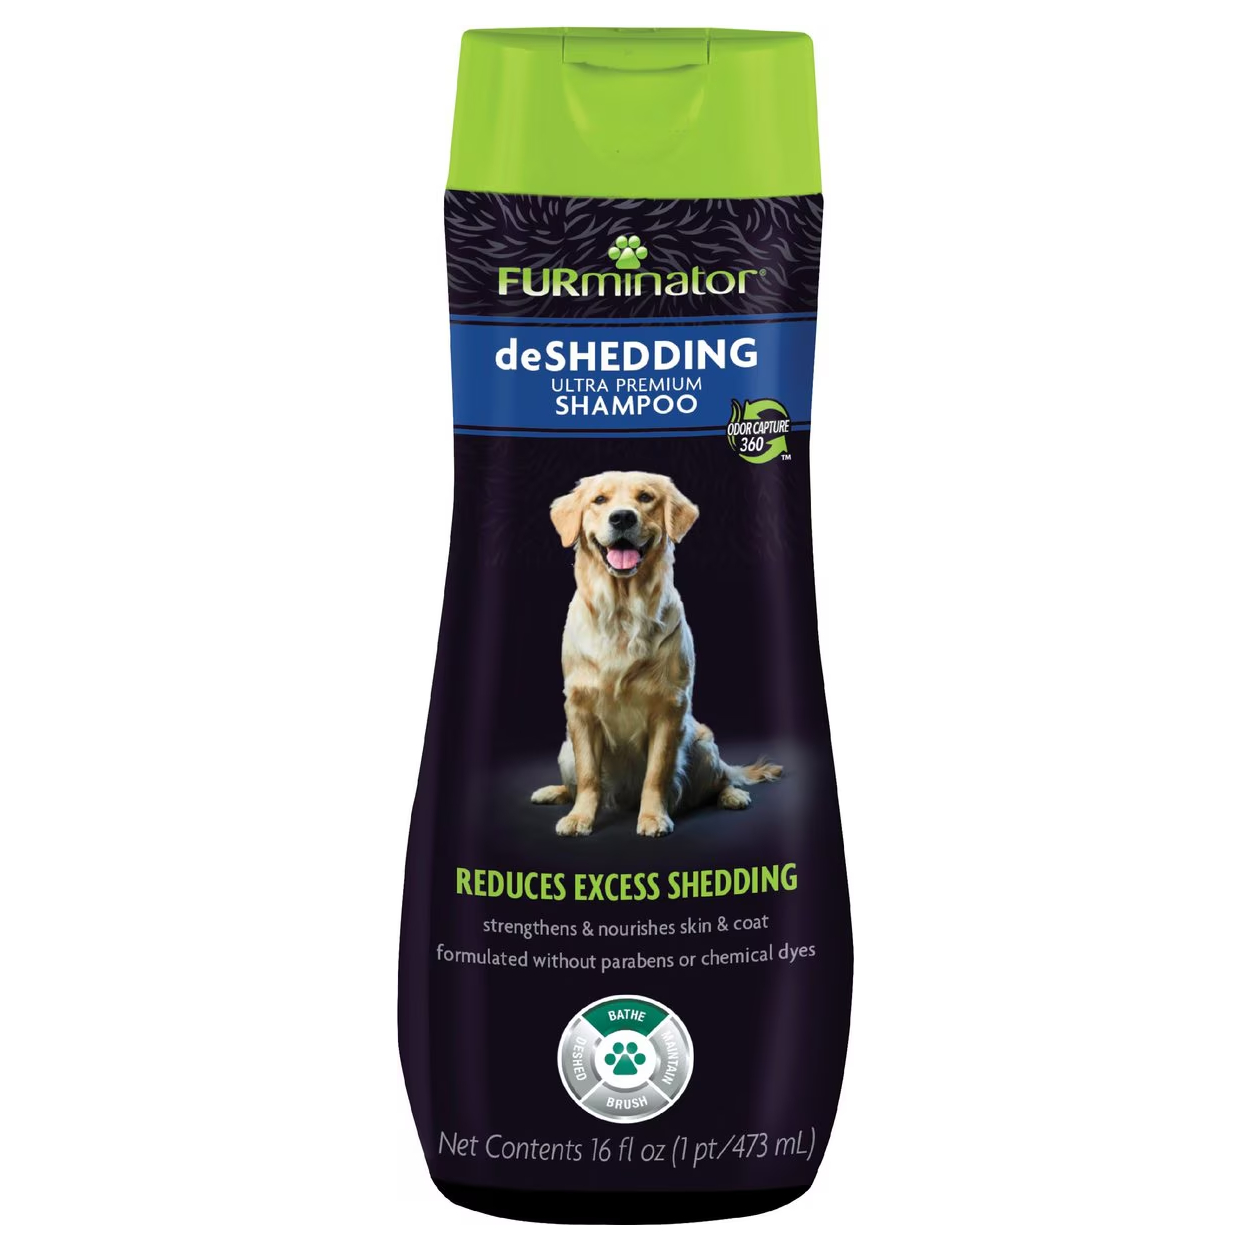 FURminator DeShedding Ultra-Premium Shampoo for Dogs